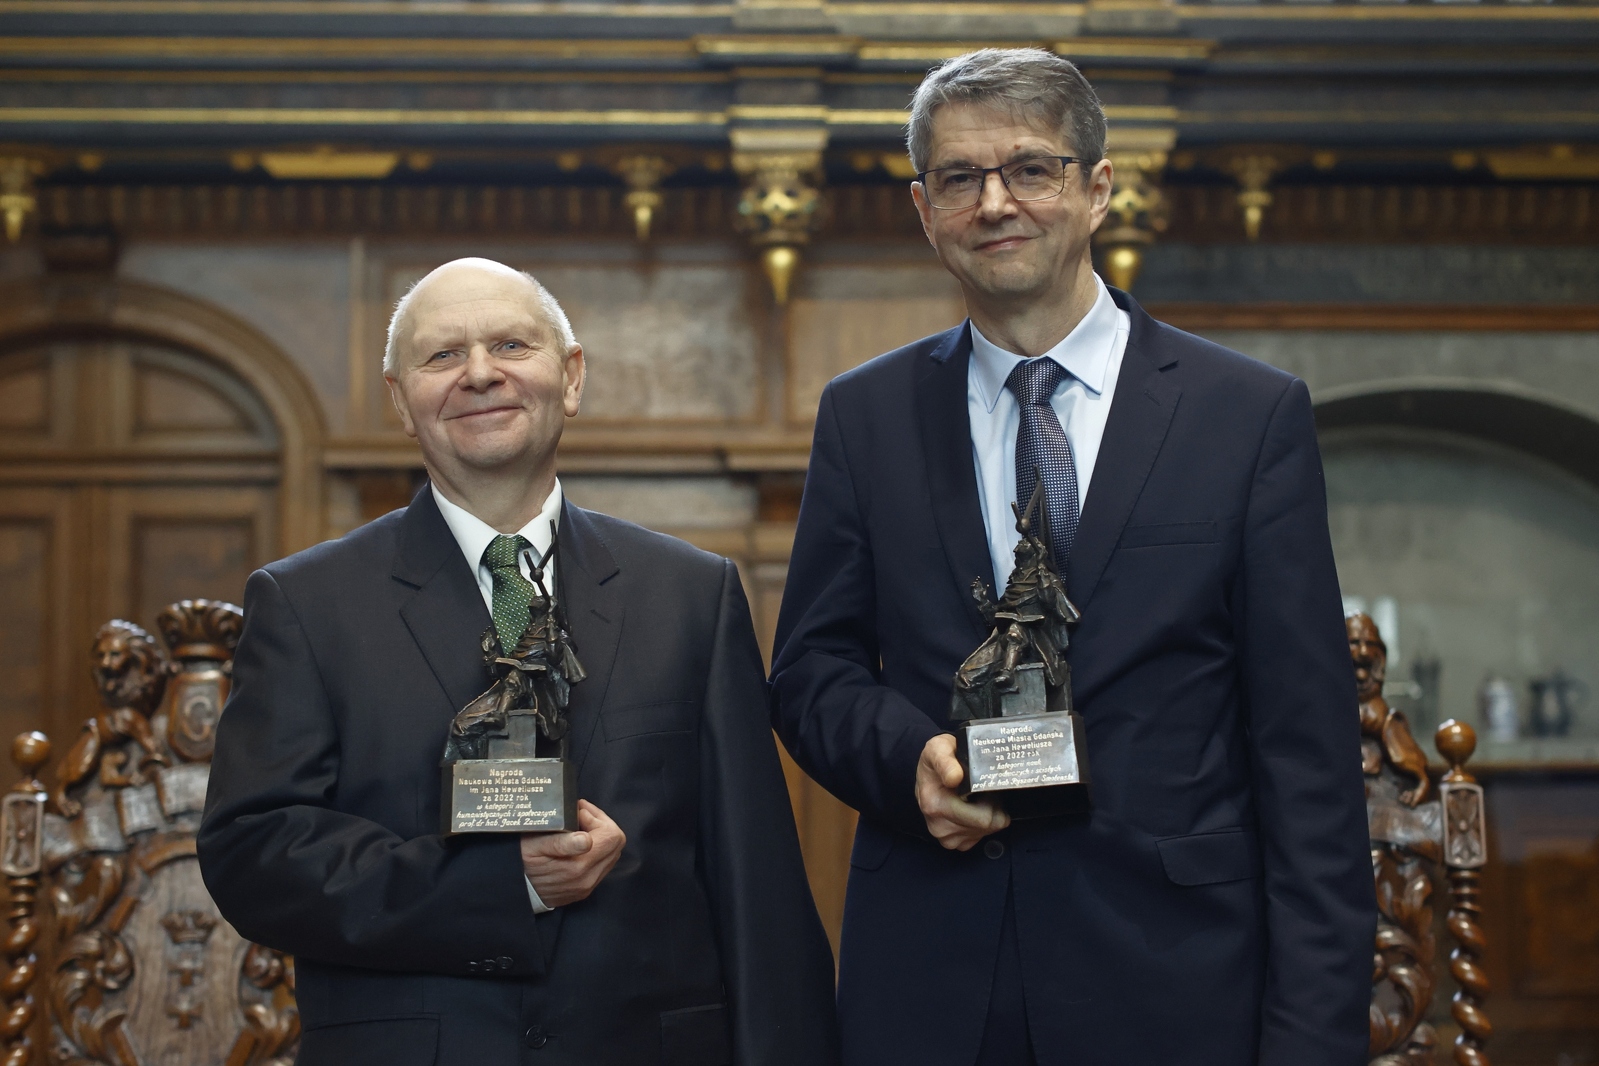 laureaci tegorocznej Nagrody Naukwej: prof. dr hab. Jacek Zaucha i prof. dr hab. Ryszard Smoleński